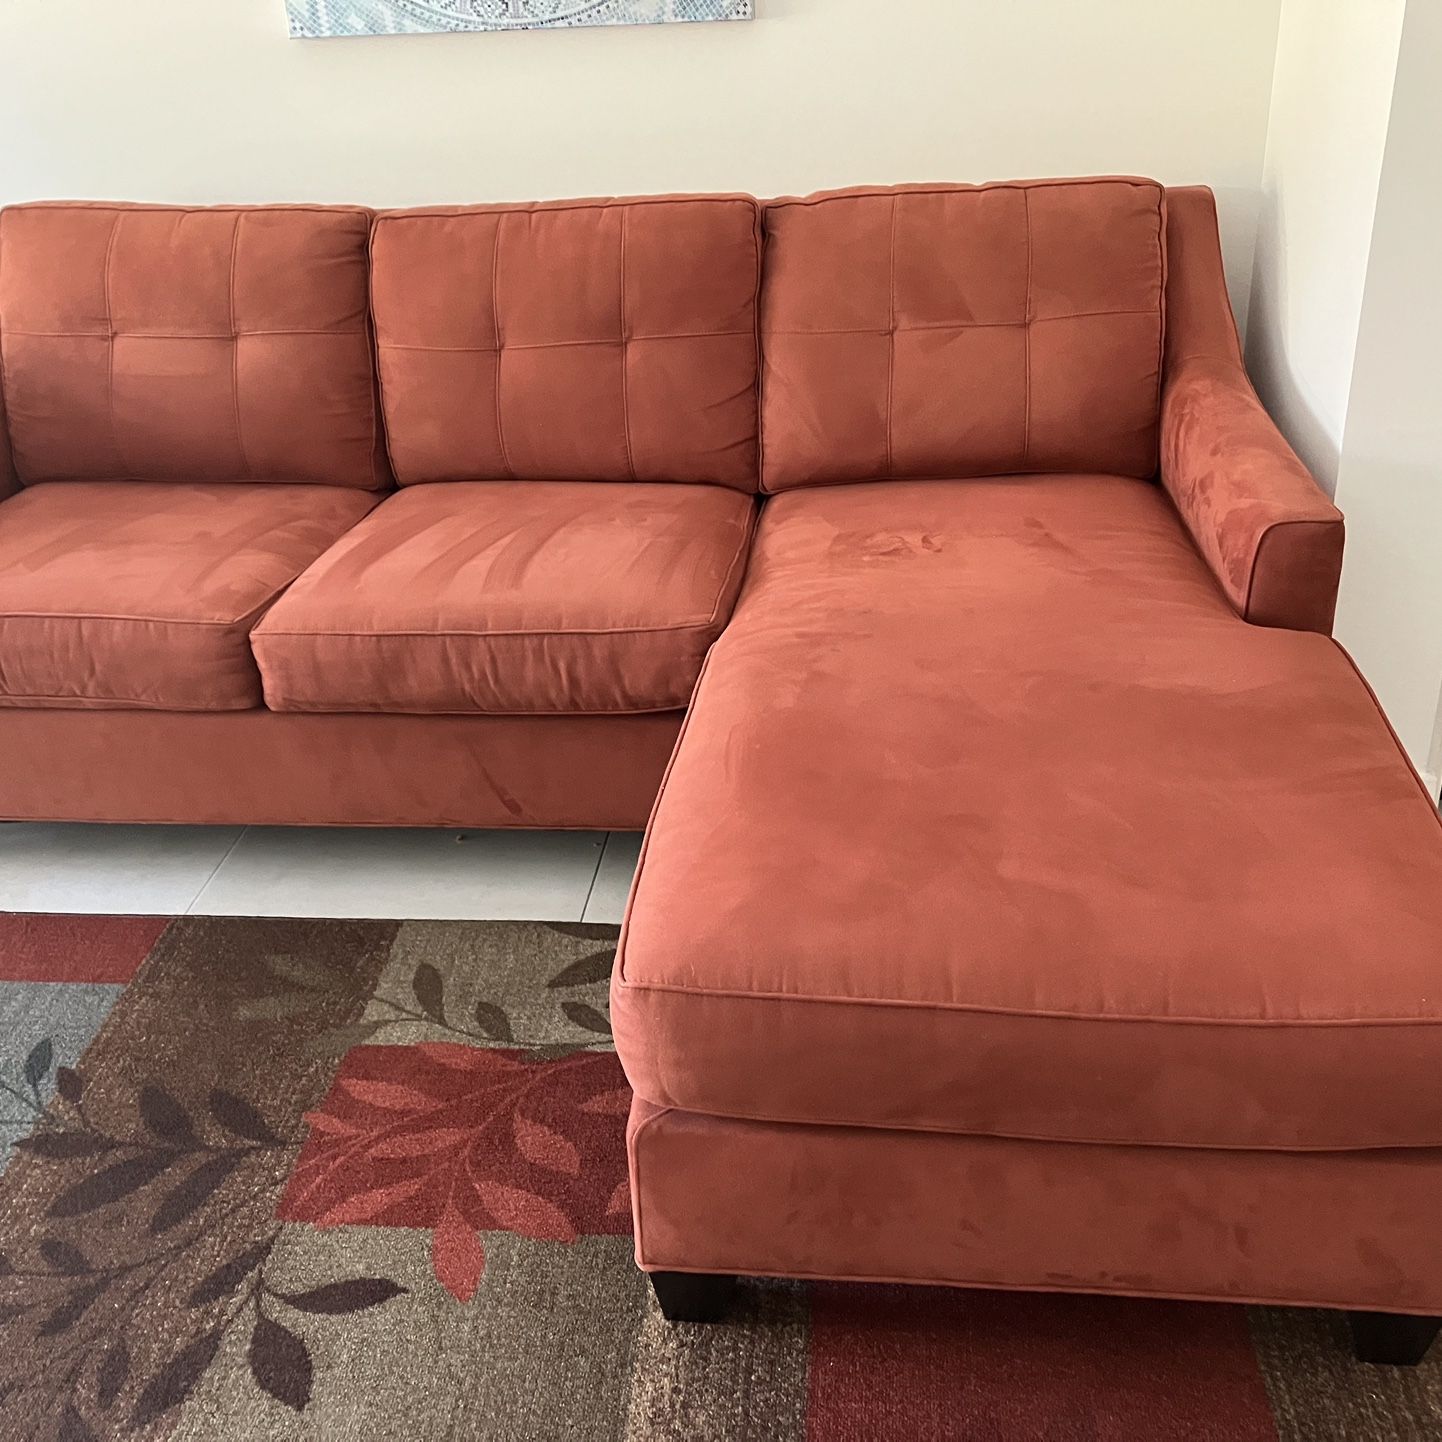 Modern Chaise Sofa